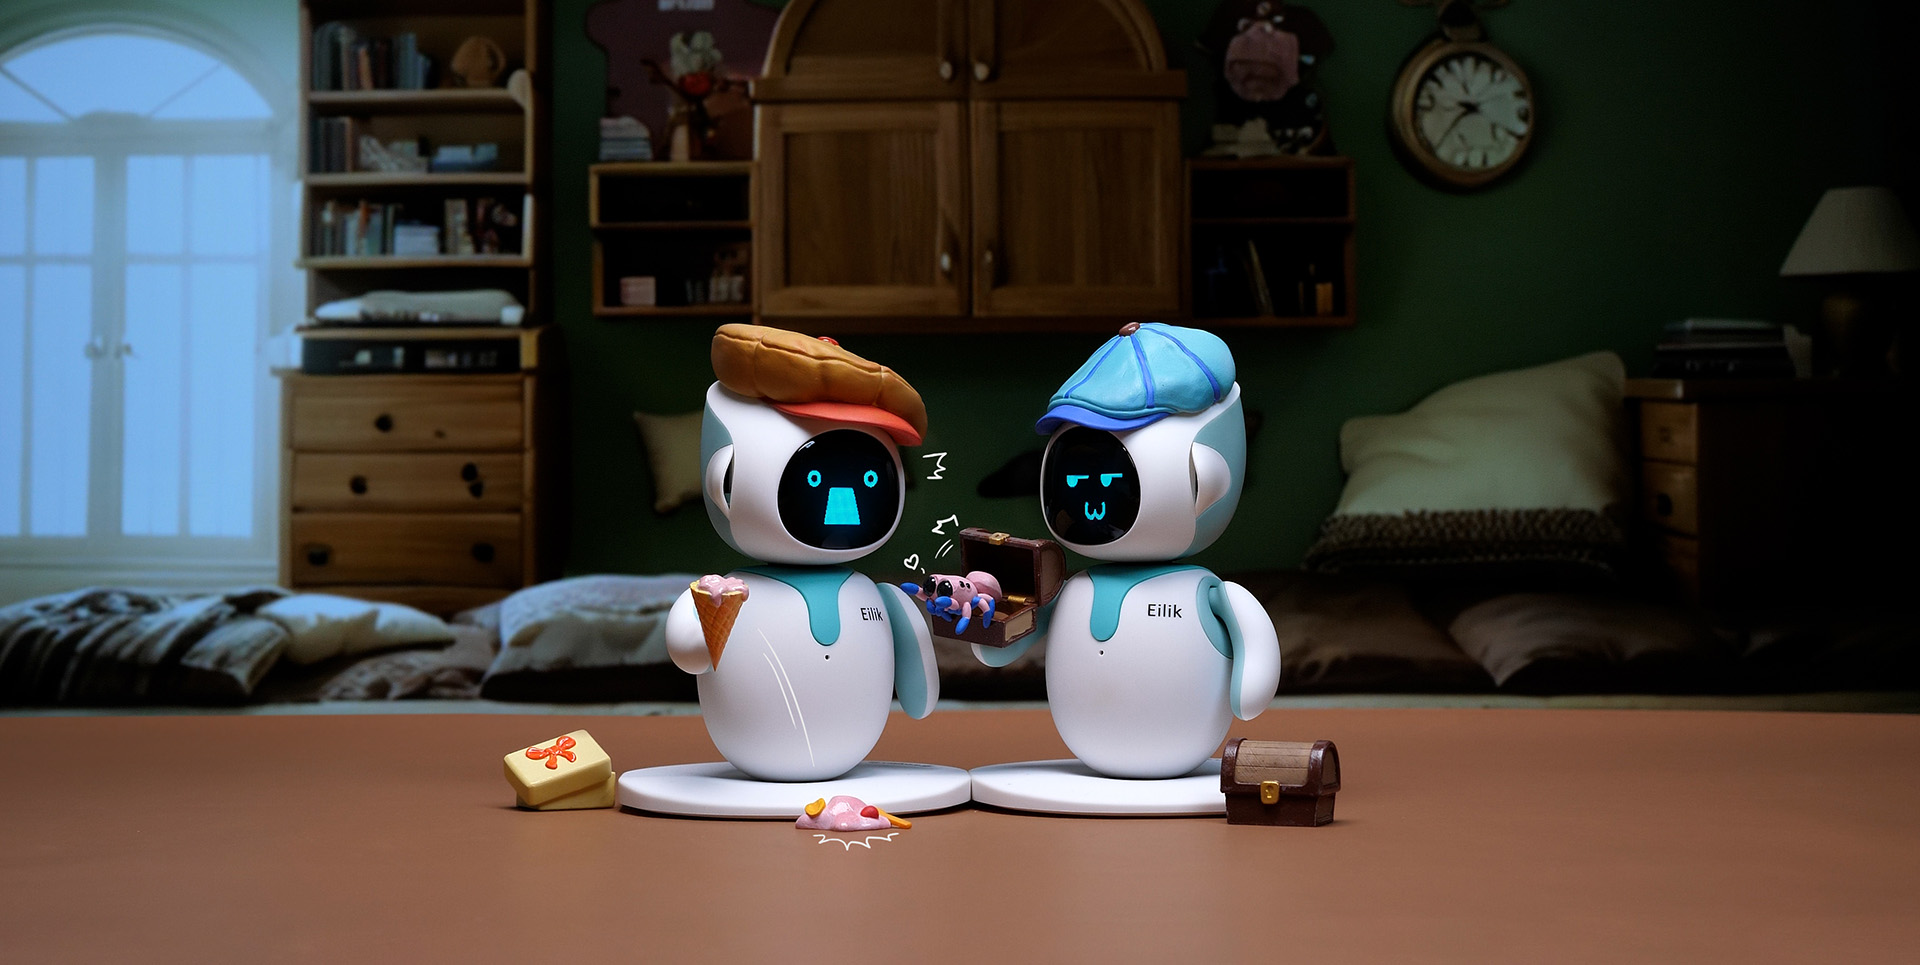 Eilik Robot Toy Smart Partner Pet Robot Desktop Toy Launched Cute